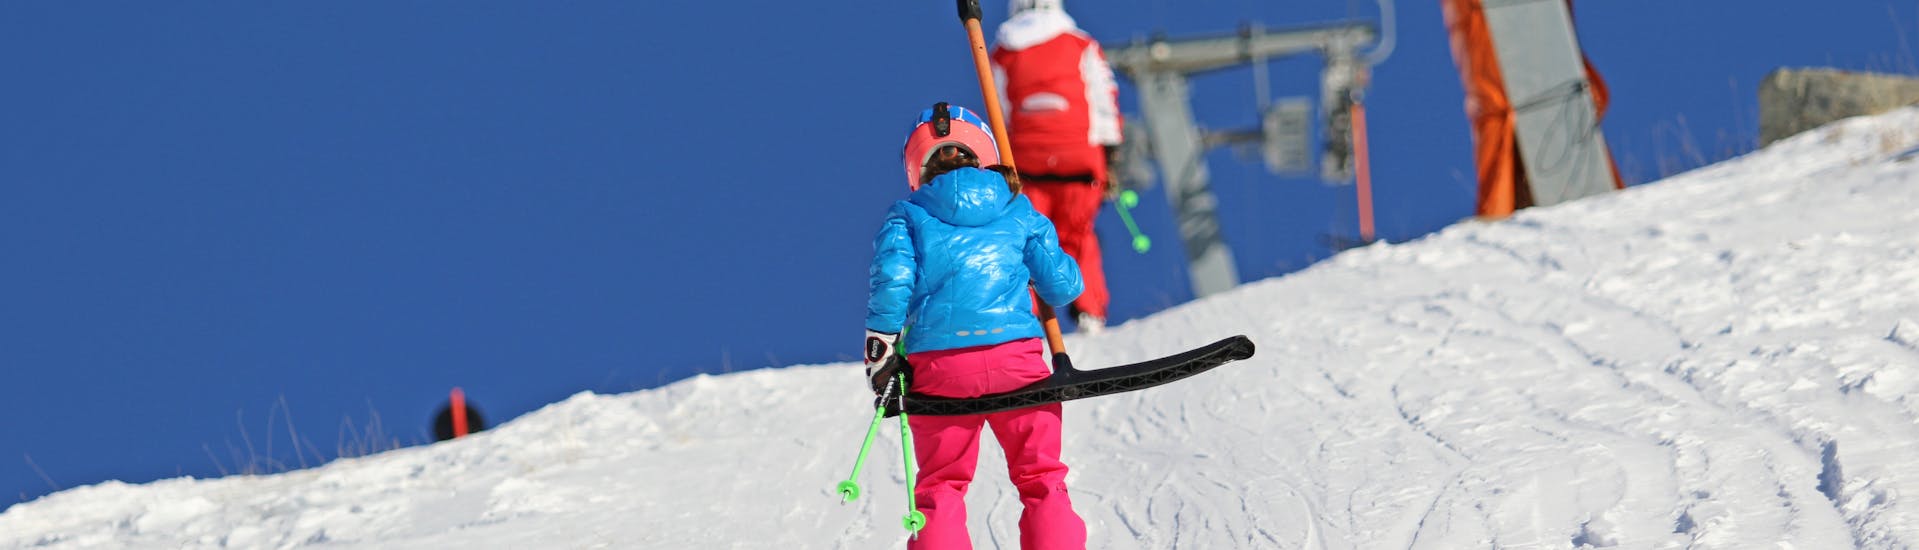 Clases de esquí privadas para niños con experiencia.